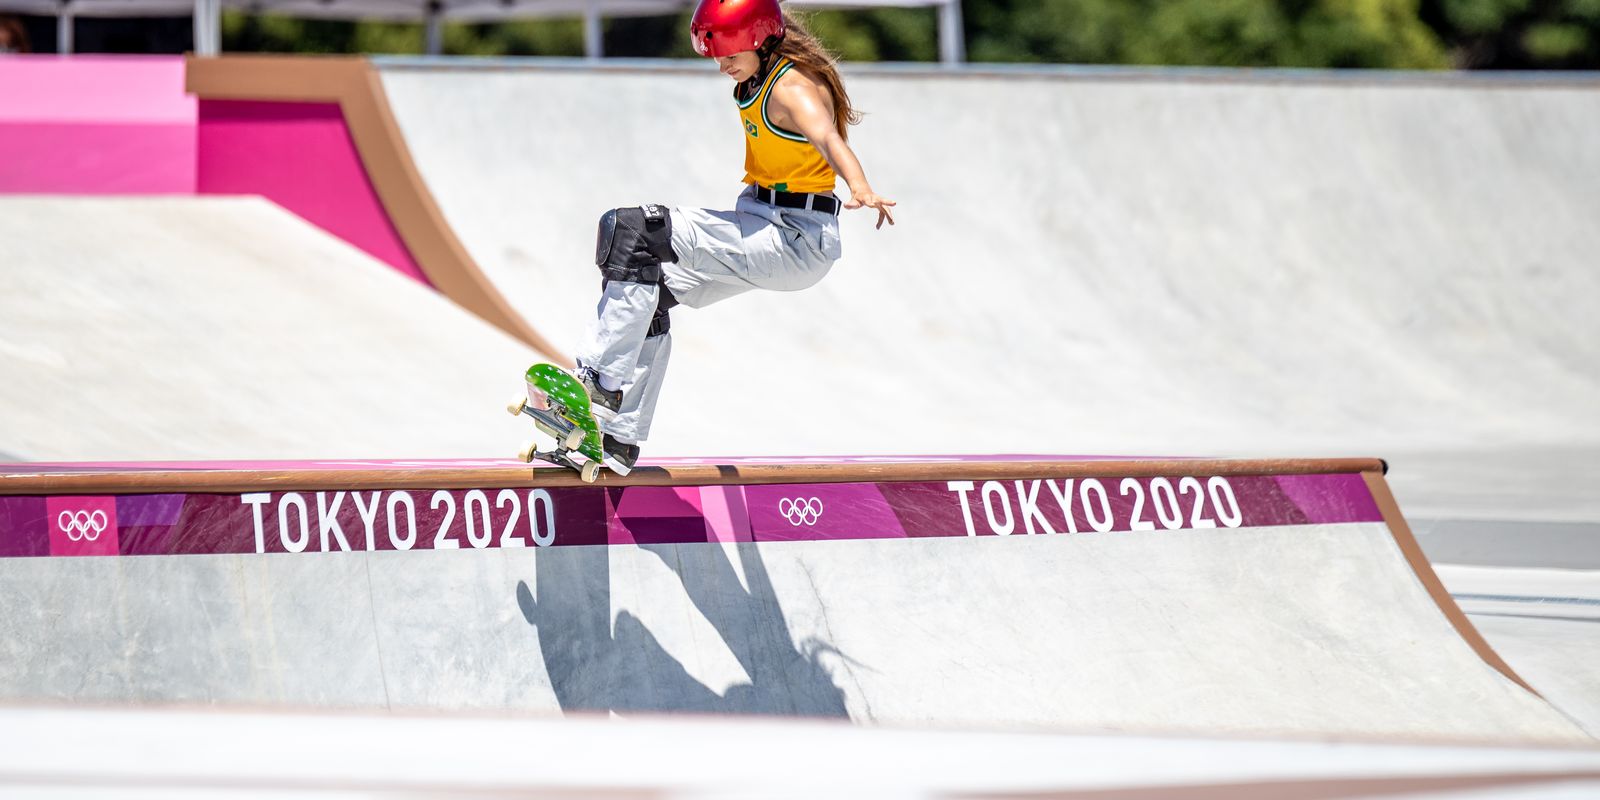 Skate na Olimpíada: saiba as diferenças entre as categorias park e